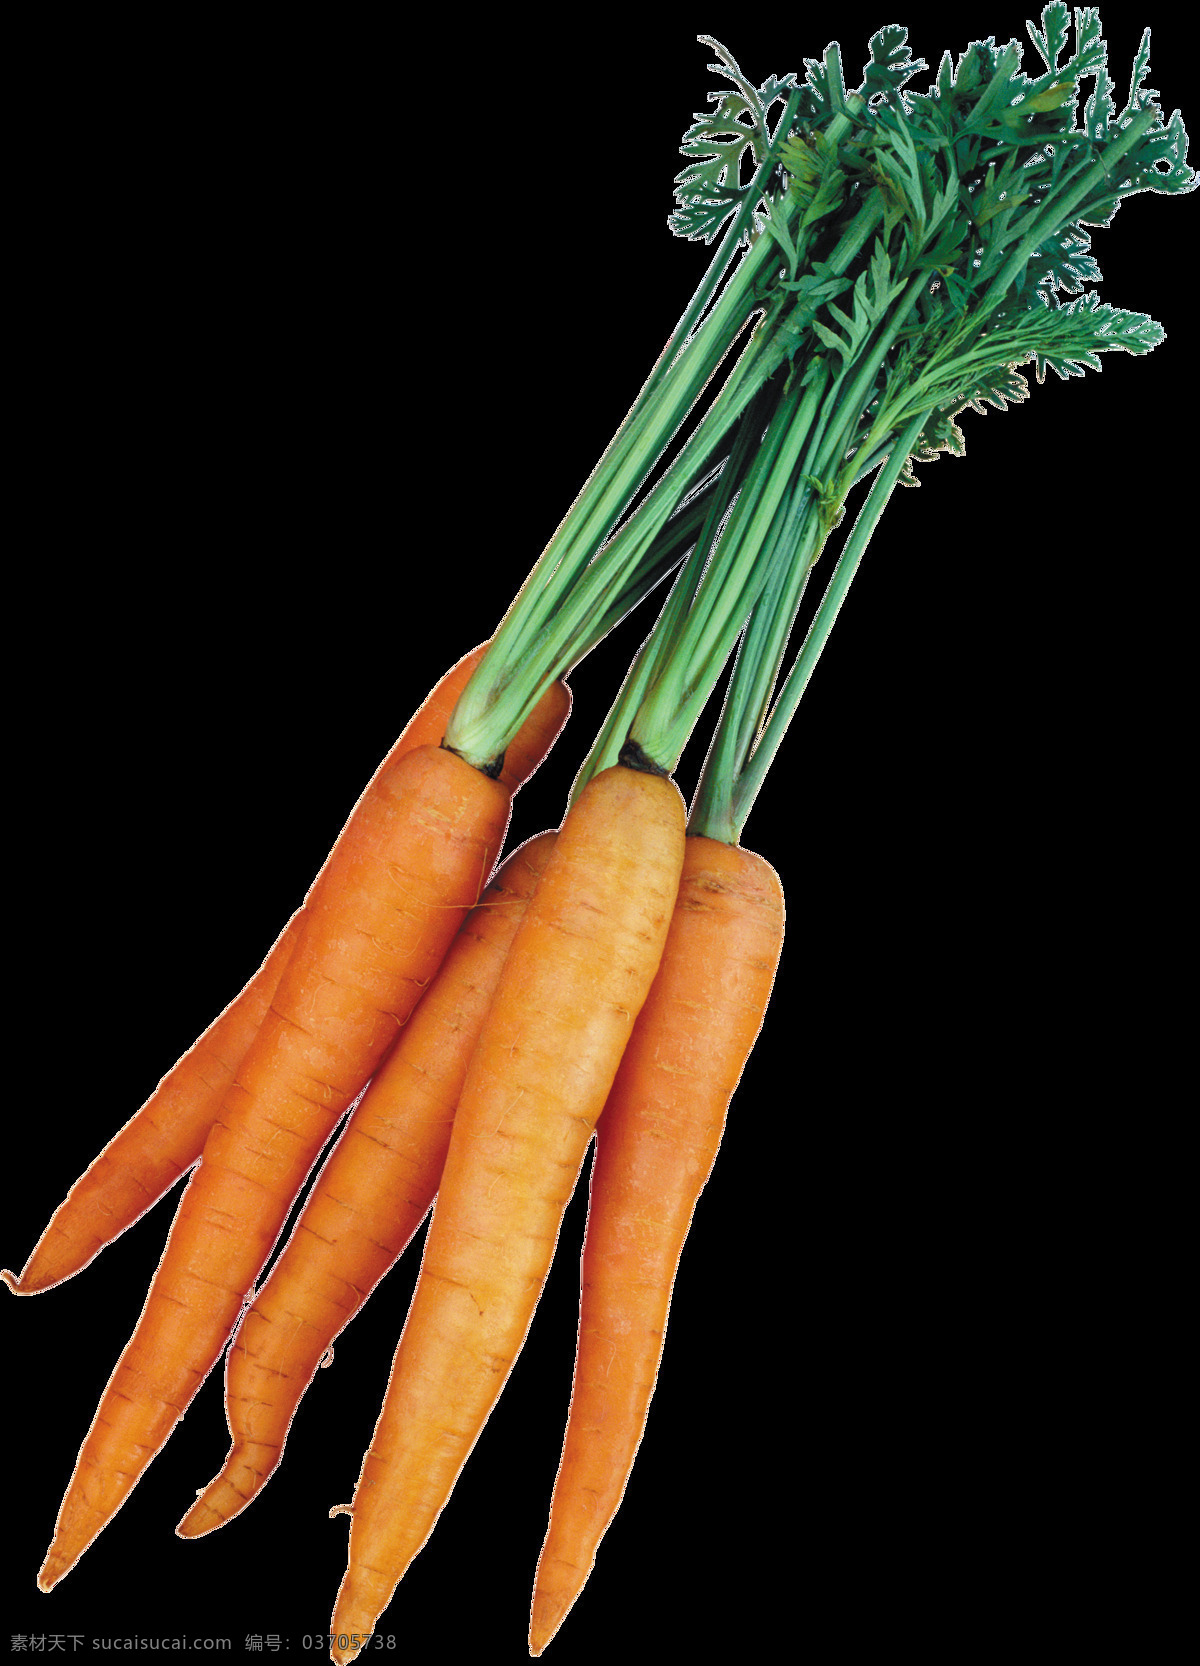 蔬菜 维生素 新鲜 胡萝卜 合集 健康 切片胡萝卜 蔬菜胡萝卜